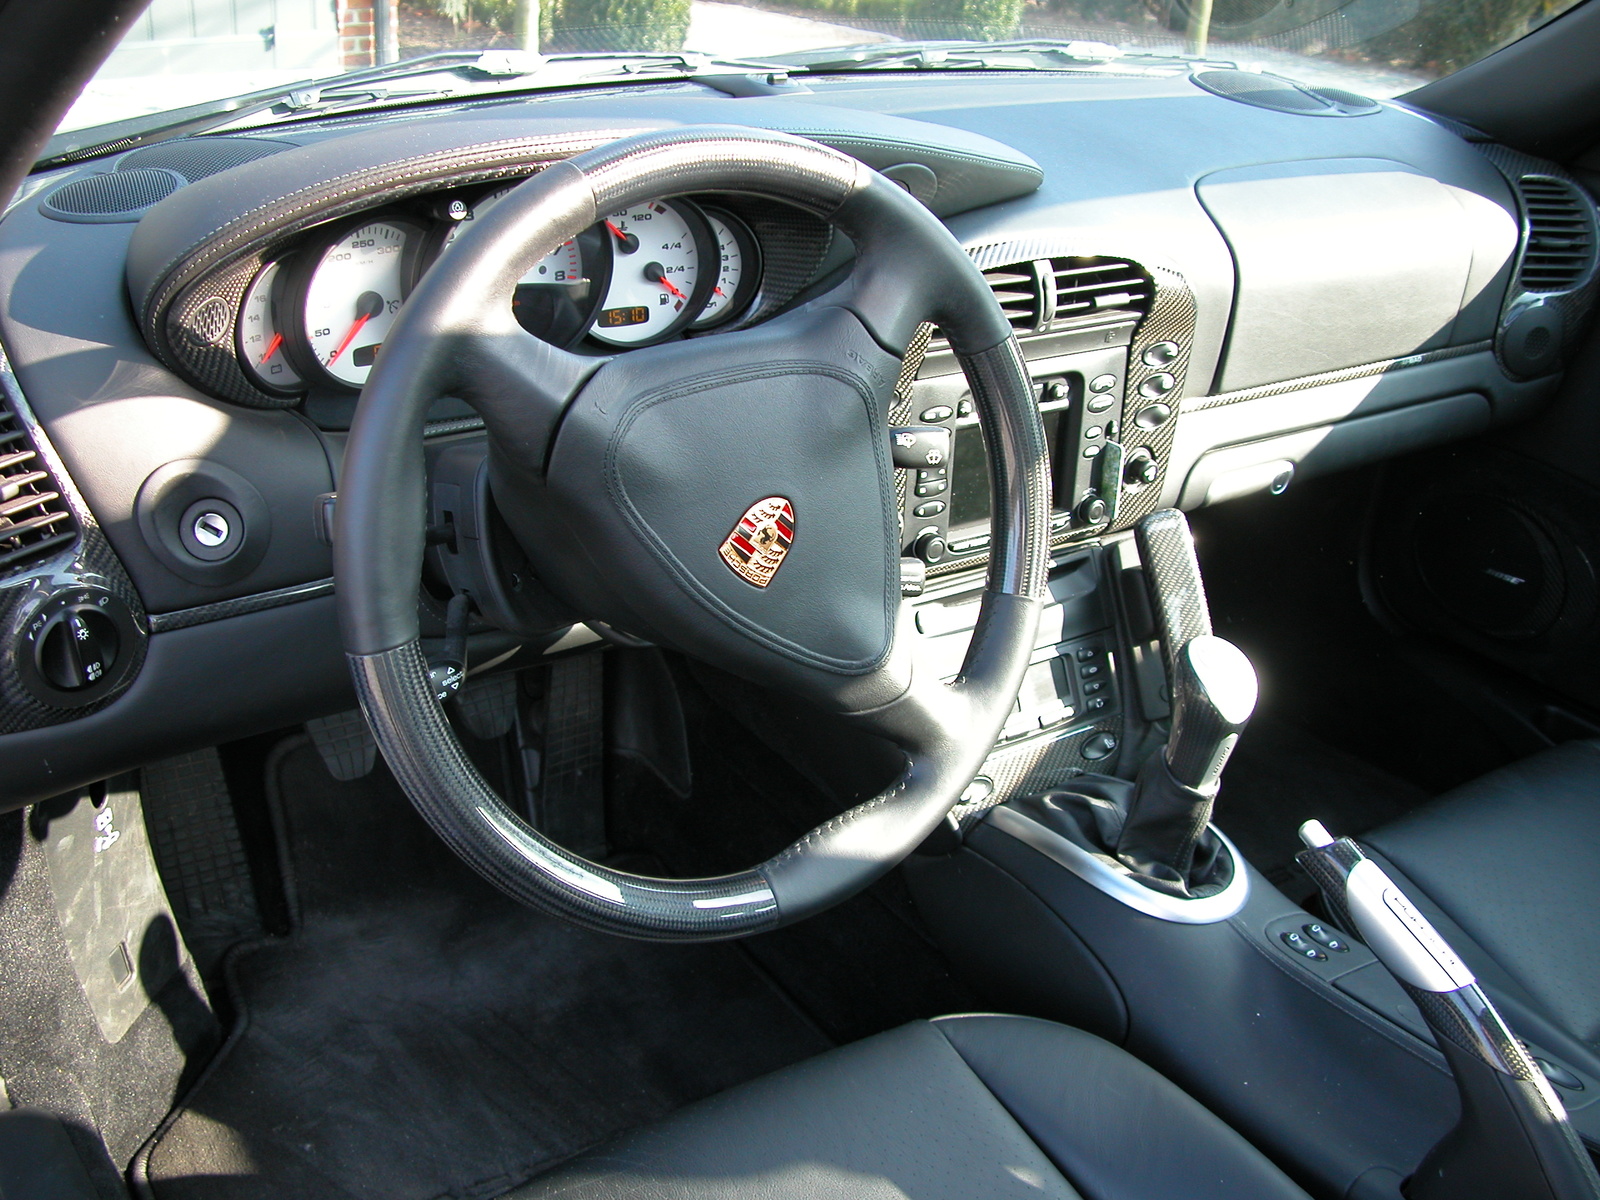 2003 Porsche 911 - Interior Pictures - CarGurus